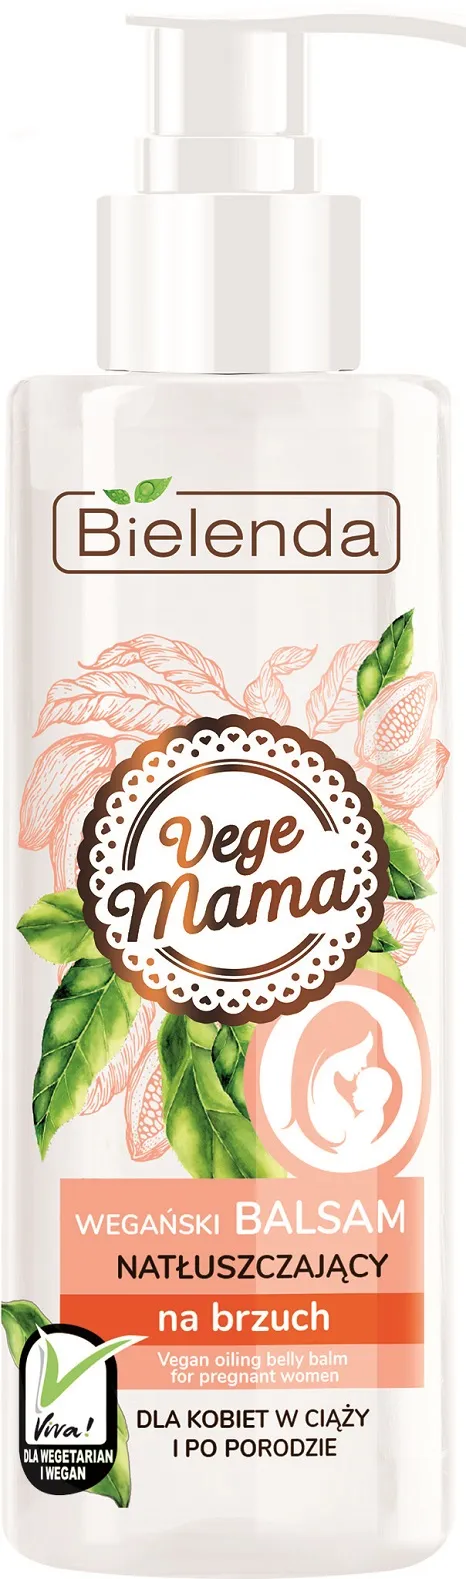 Bielenda Vege Mama wegański balsam natłuszczający na brzuch, 200 ml